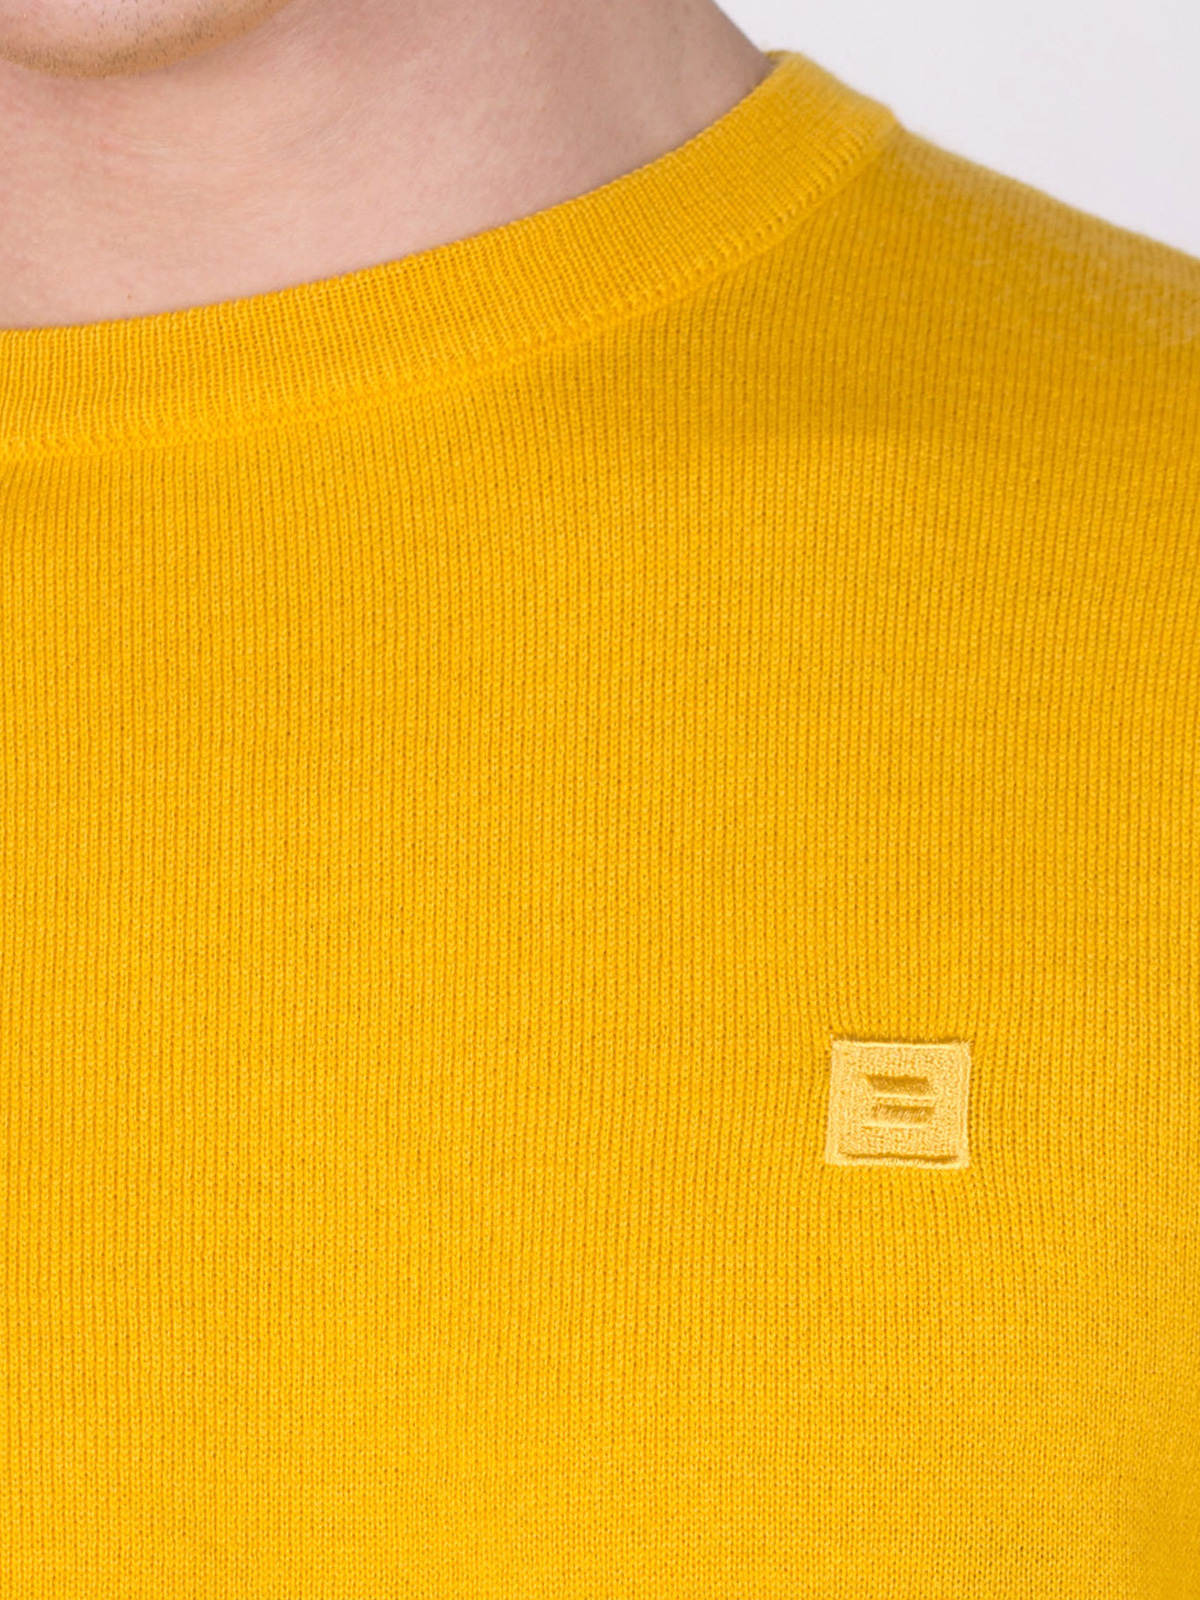 Merino wool sweater in light yellow - 33081 € 21.93 img4